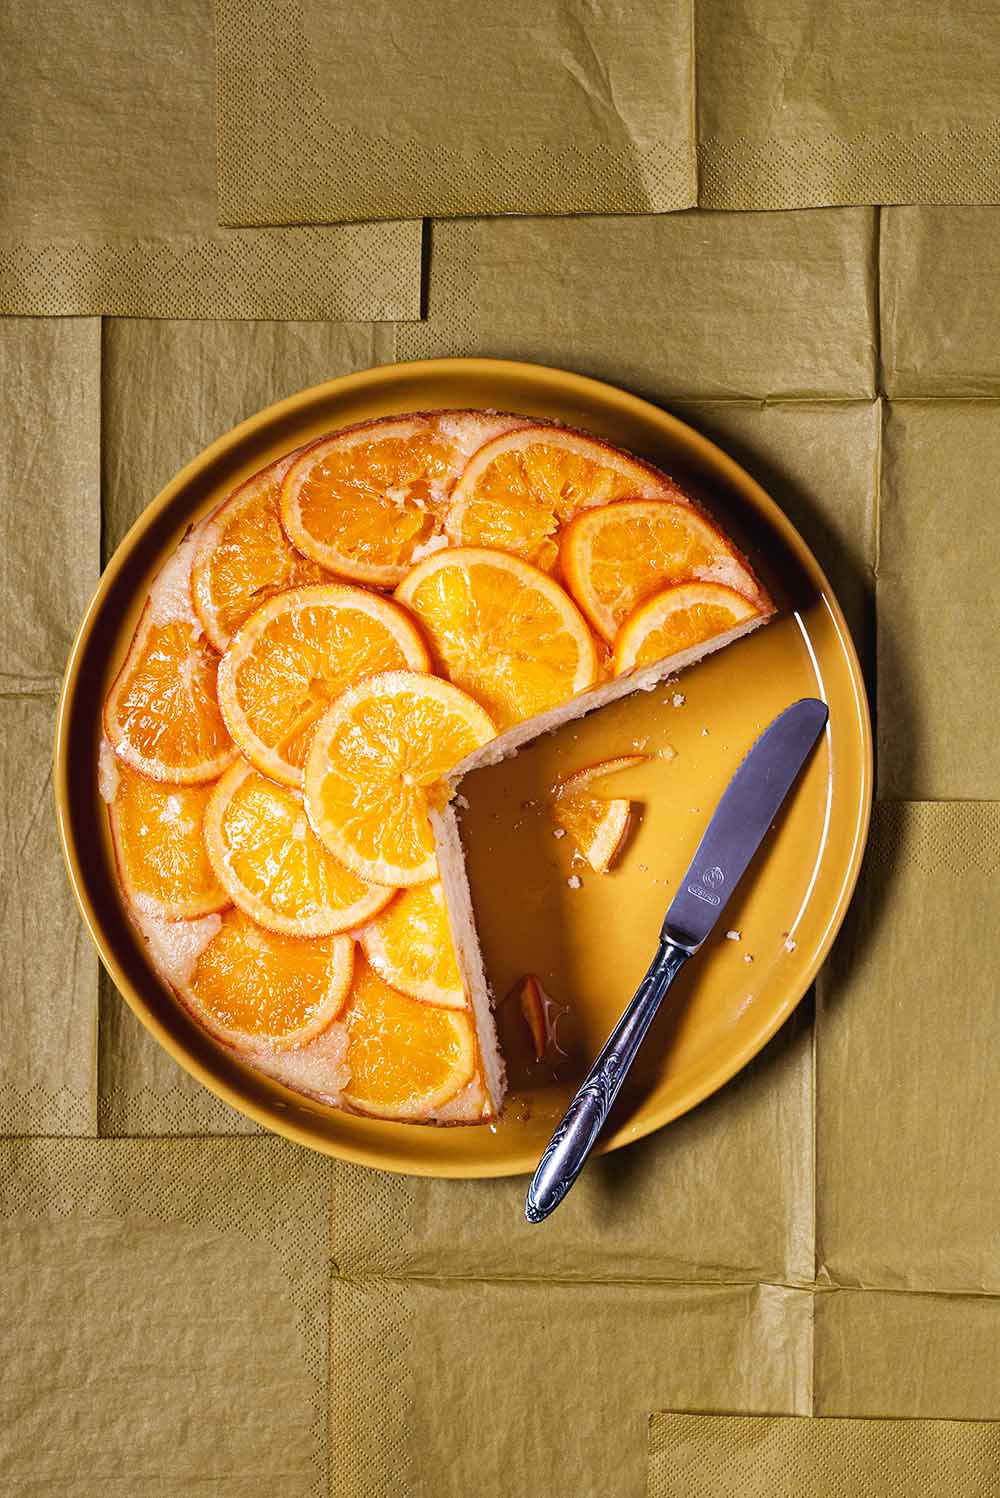 En un mantel de color caqui está puesto un plato de coclor naranja y encima este plato está la tarta de naranja invertida. También en el plato hay un cuchillo para cortar.